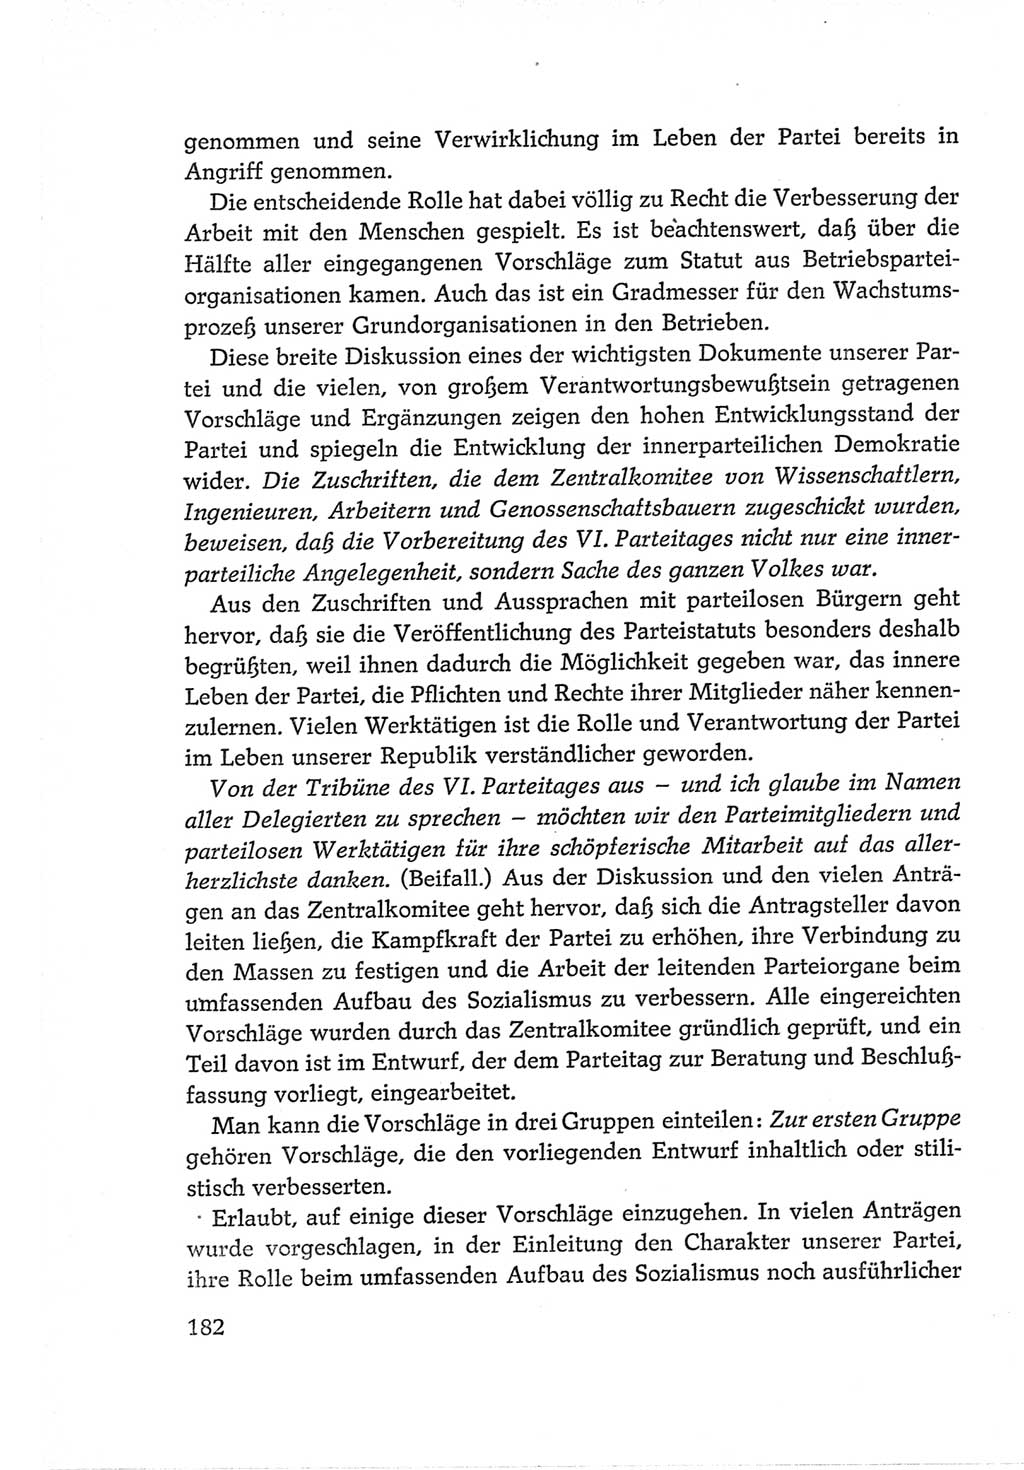 Protokoll der Verhandlungen des Ⅵ. Parteitages der Sozialistischen Einheitspartei Deutschlands (SED) [Deutsche Demokratische Republik (DDR)] 1963, Band Ⅱ, Seite 182 (Prot. Verh. Ⅵ. PT SED DDR 1963, Bd. Ⅱ, S. 182)